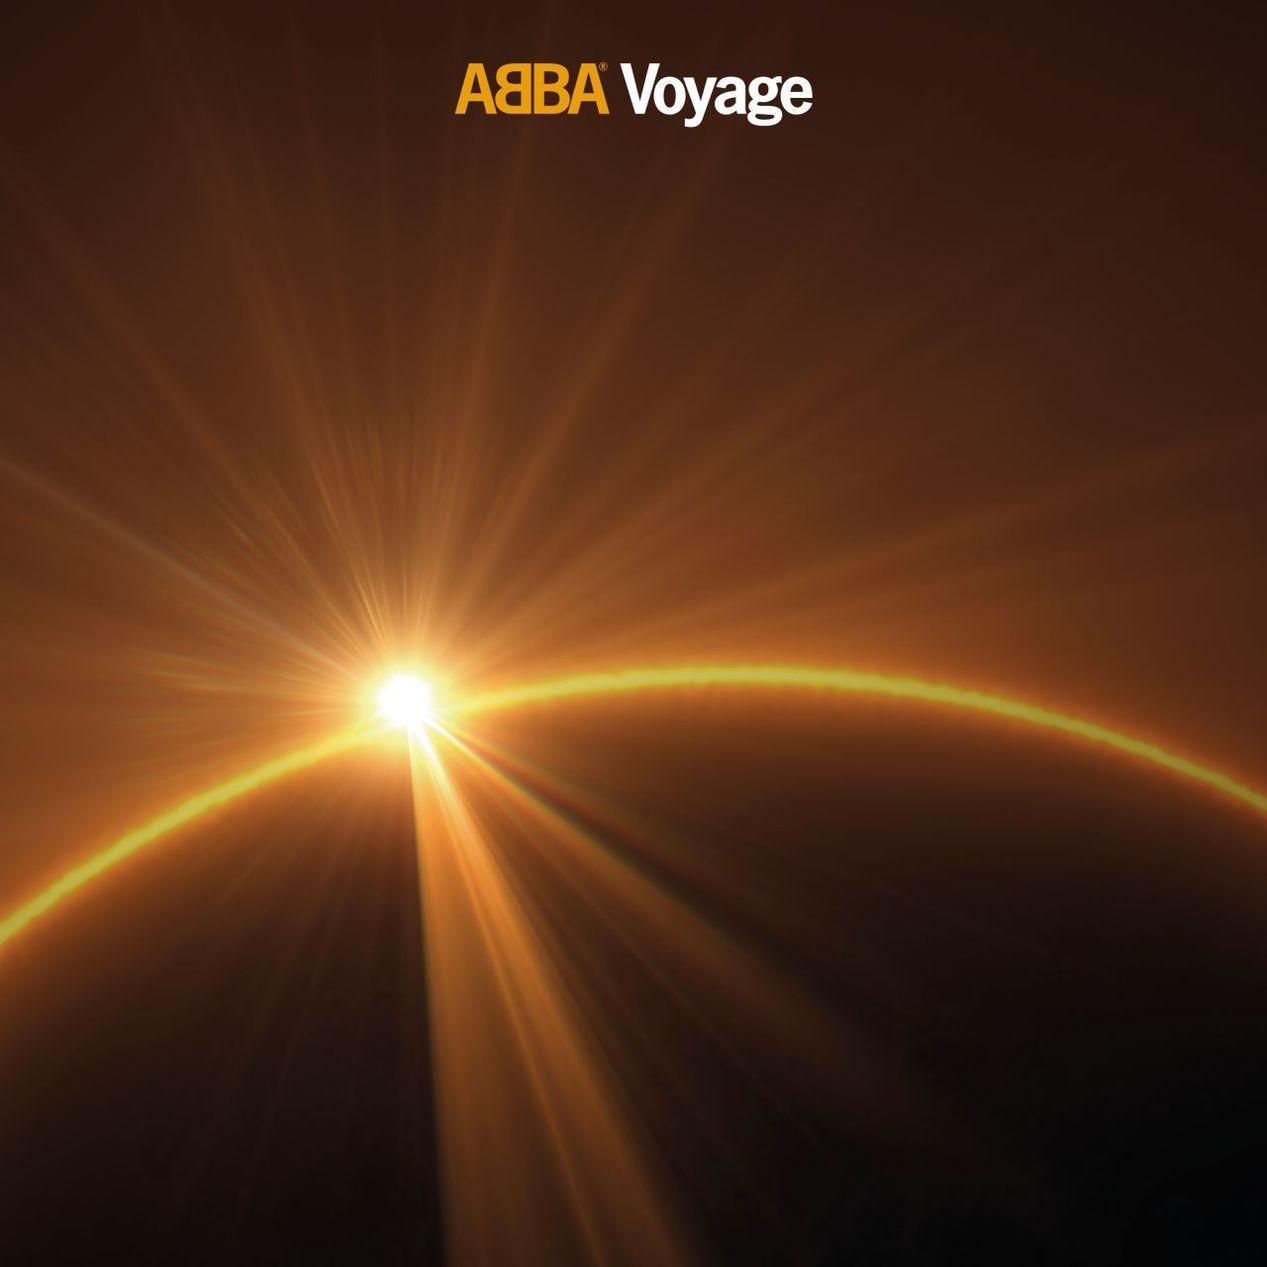 Voyage Deluxe Edition CD von Abba bei Weltbild.de bestellen